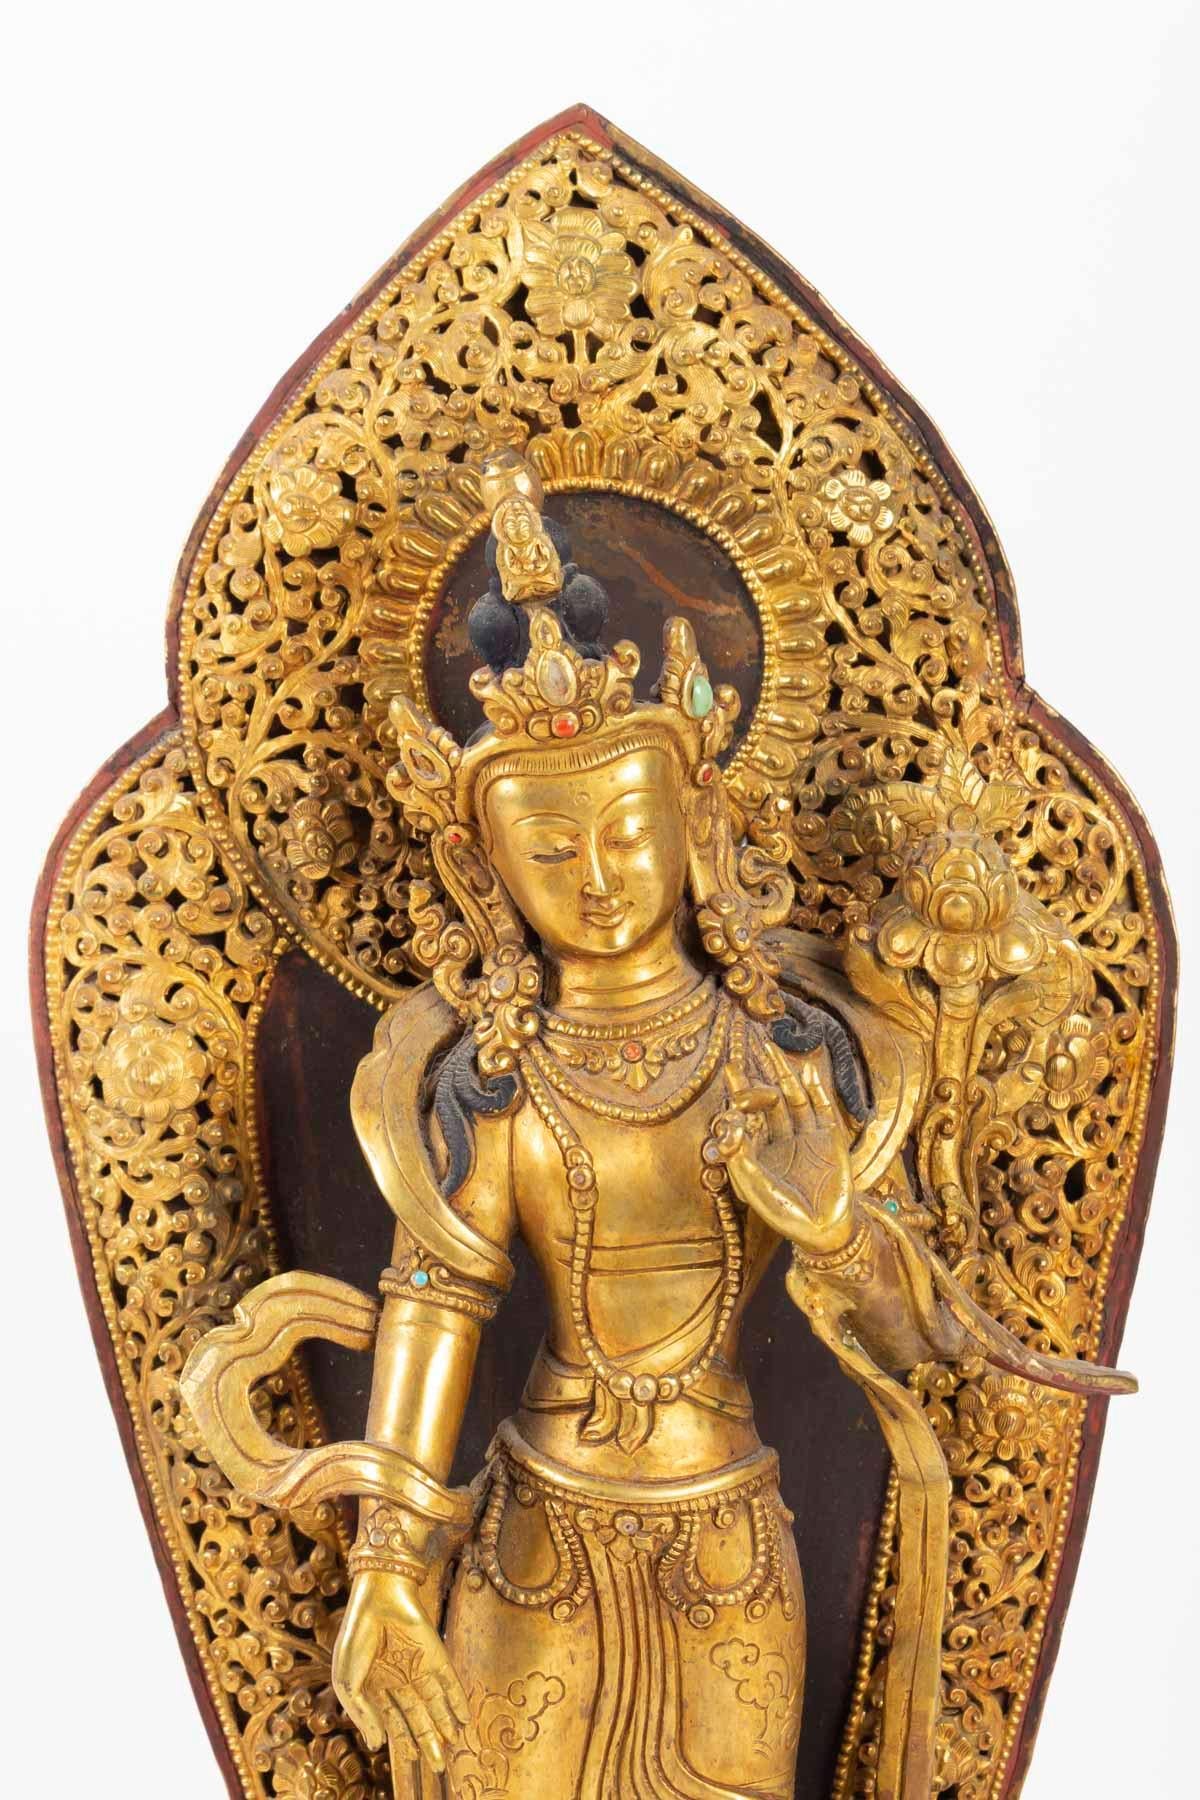 Golden bronze Buddhist divinity, Tibet, middle of the 20th century, Mandole Ajourée
Measures: H 43cm, L 19cm, P 10cm.